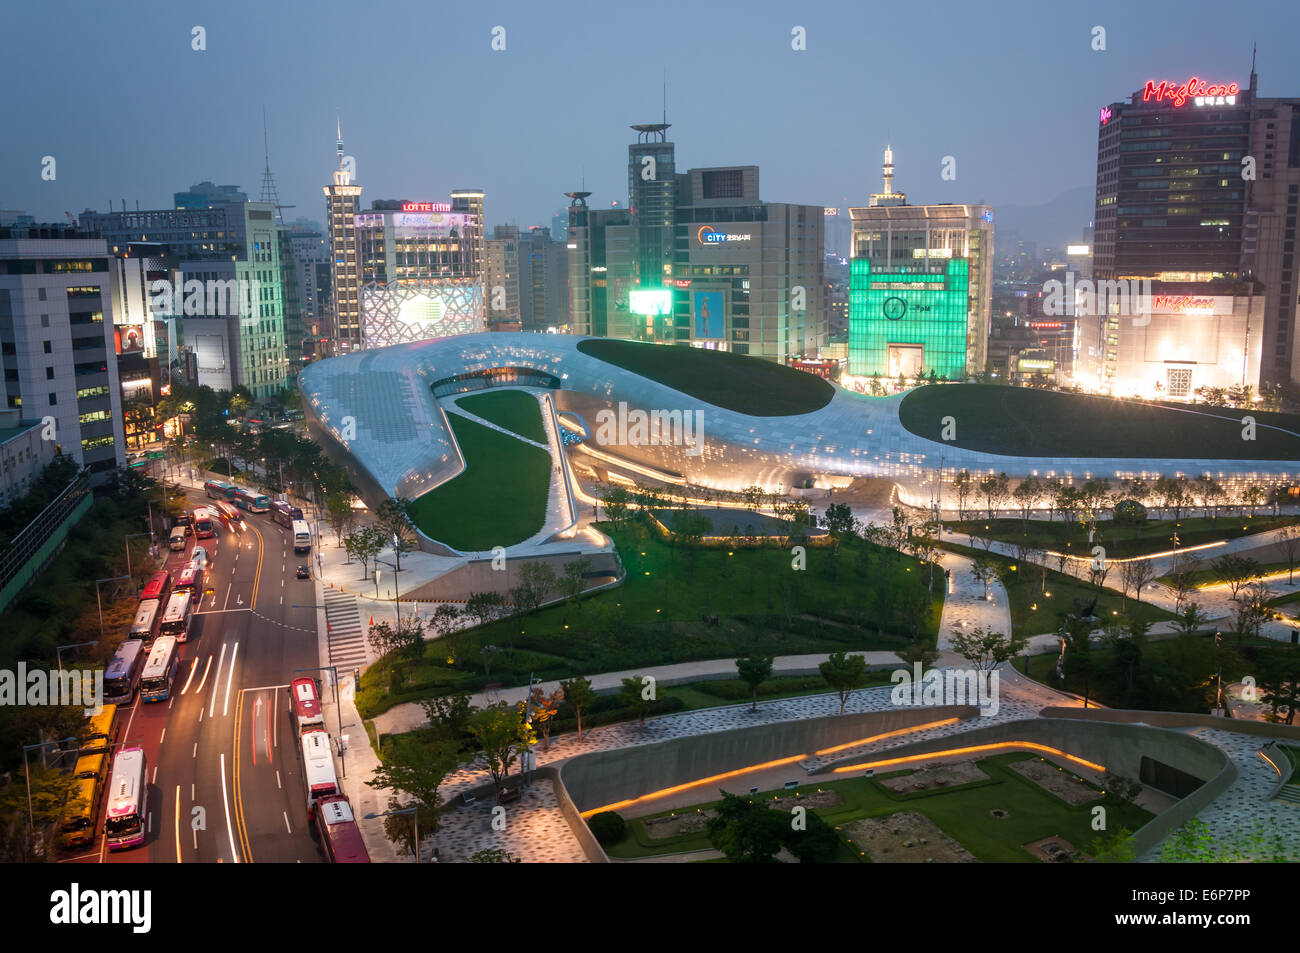 L'architecture moderne au nouveau design Plaza Dongdaemun de Séoul, Corée du Sud, conçu par l'architecte Zaha Hadid. Banque D'Images